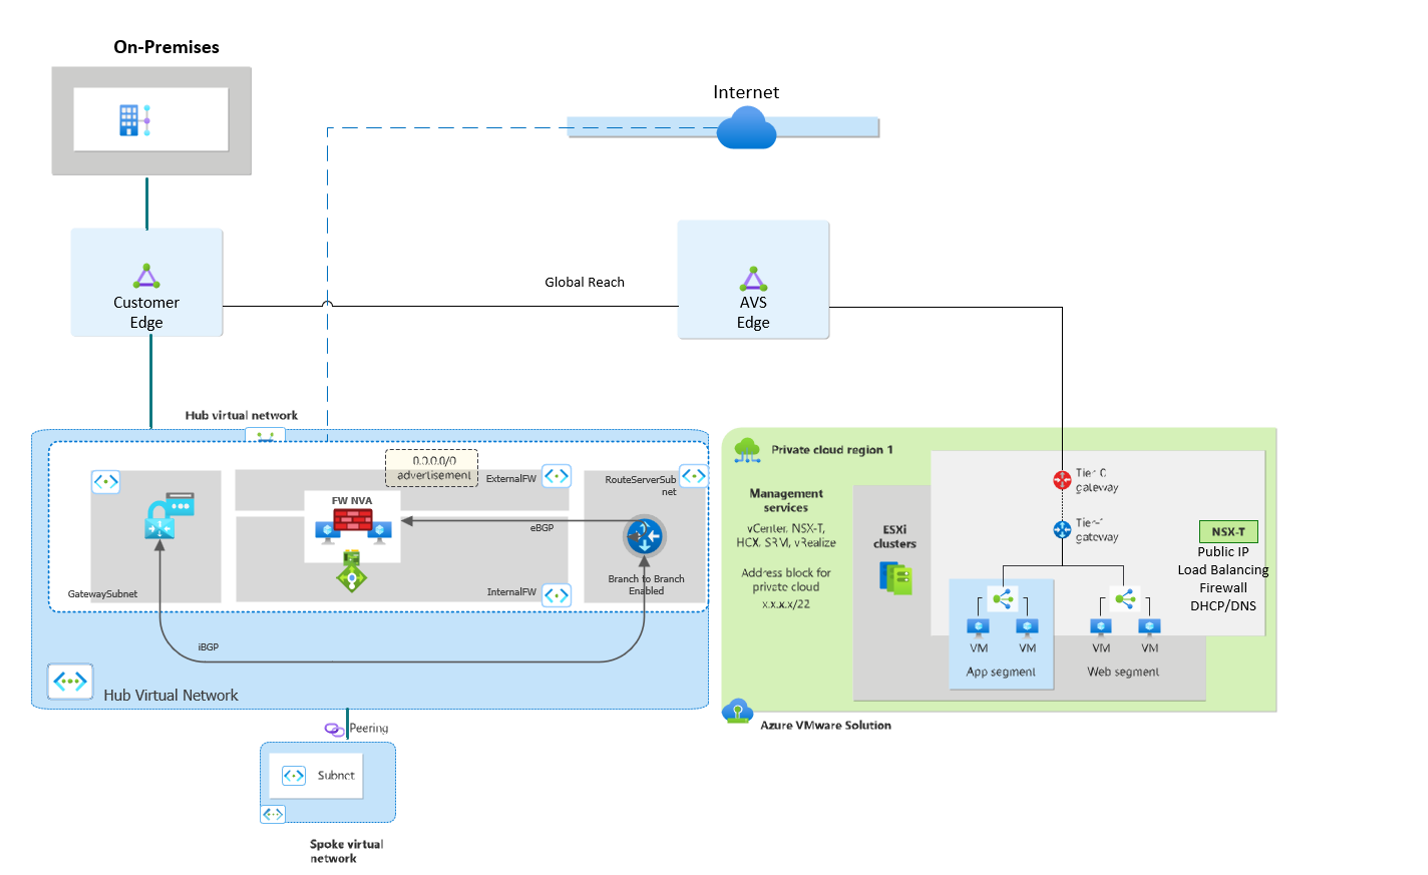 Azure VMware Solution mit Untersuchung von Datenverkehr in Azure mithilfe eines virtuellen Netzwerkgeräts eines Drittanbieters